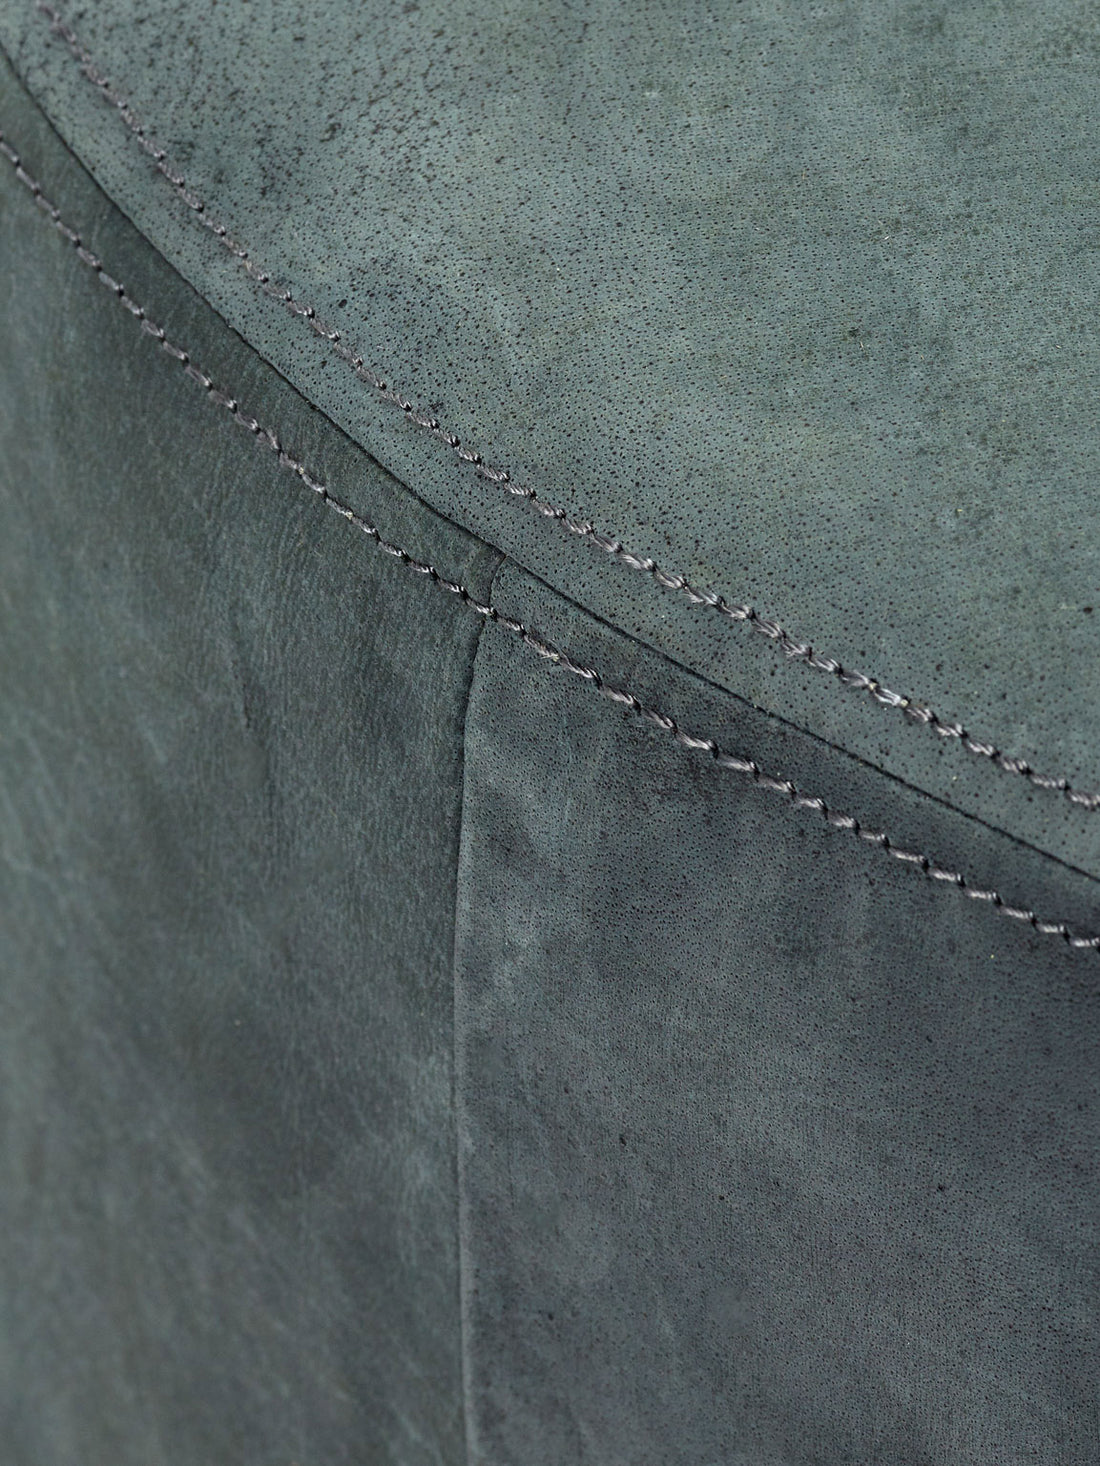 Dark grey leather pouf